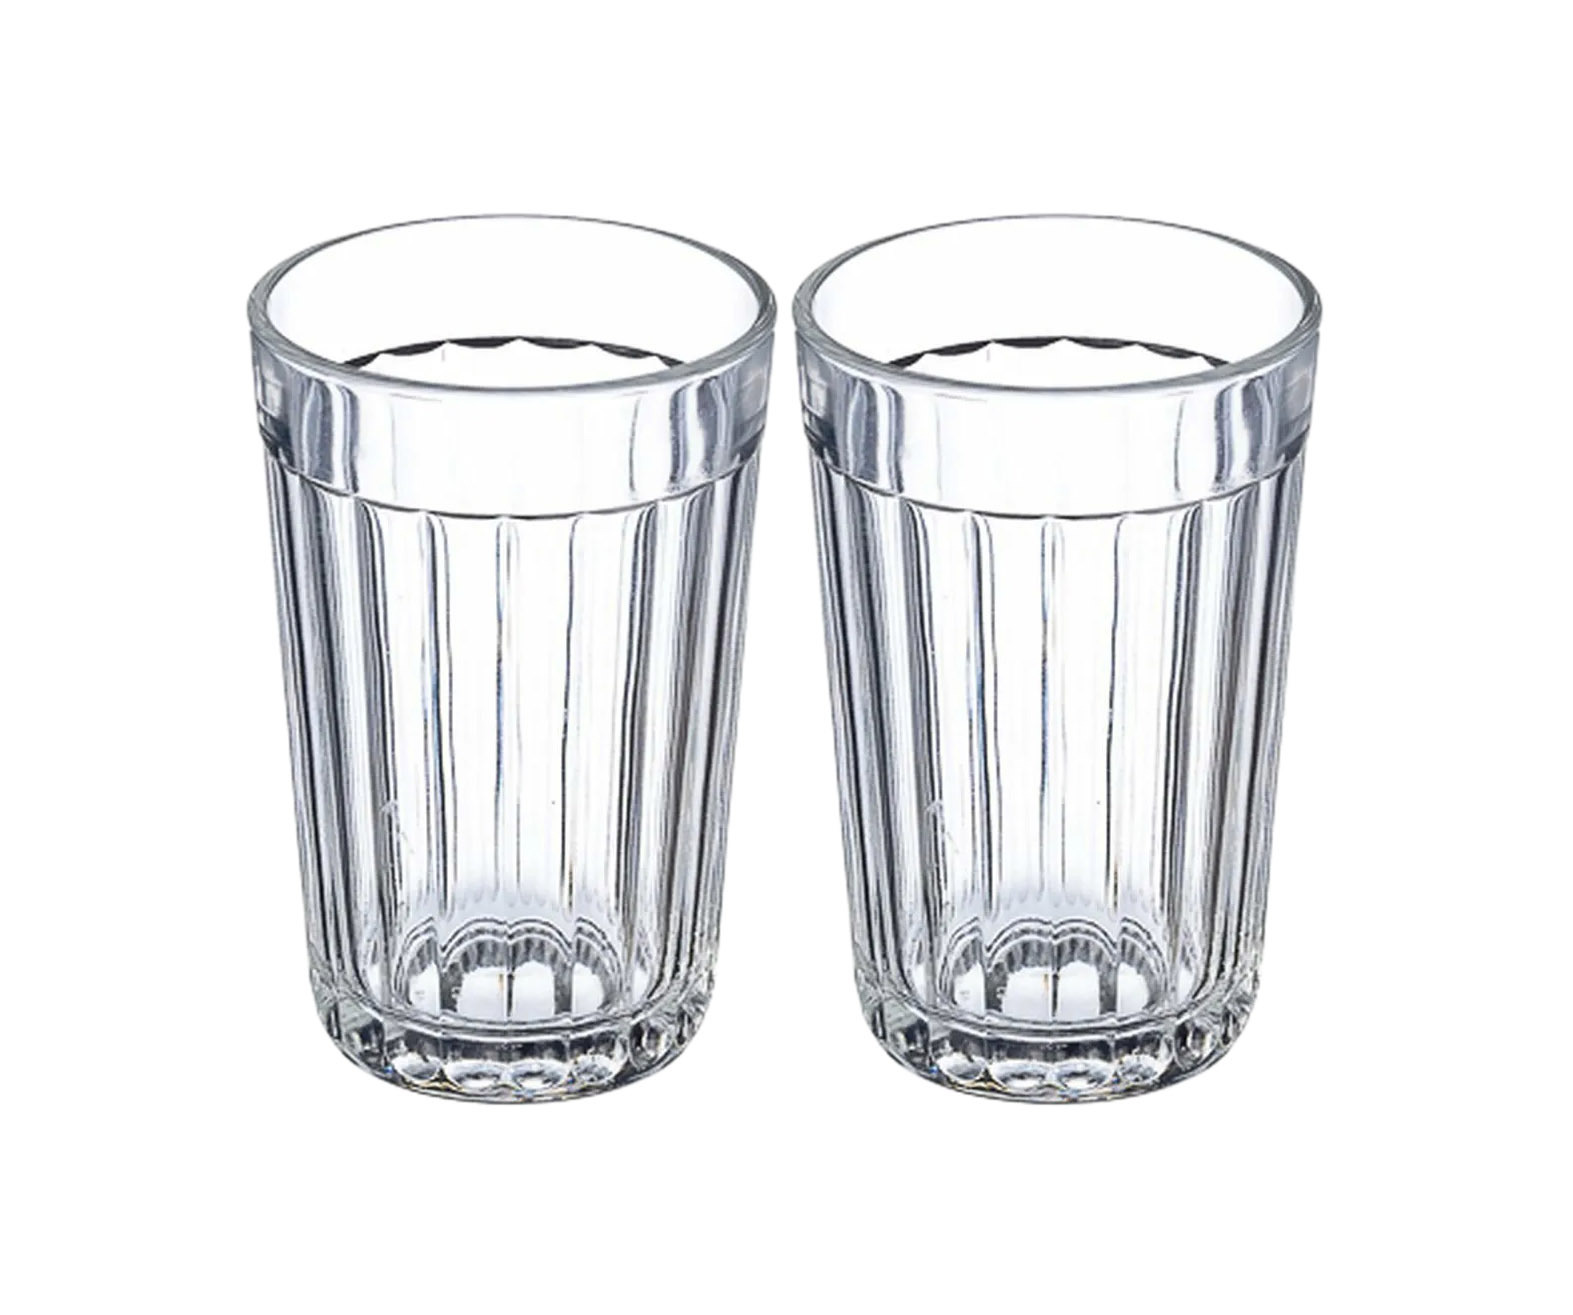 2 5 стакана воды сколько мл. Стакан граненый 250 мл. ОСЗ 785 ту стакан граненый, 250 мл. Стакан 200 грамм граненый это сколько мл. Граненый стакан 250 грамм.